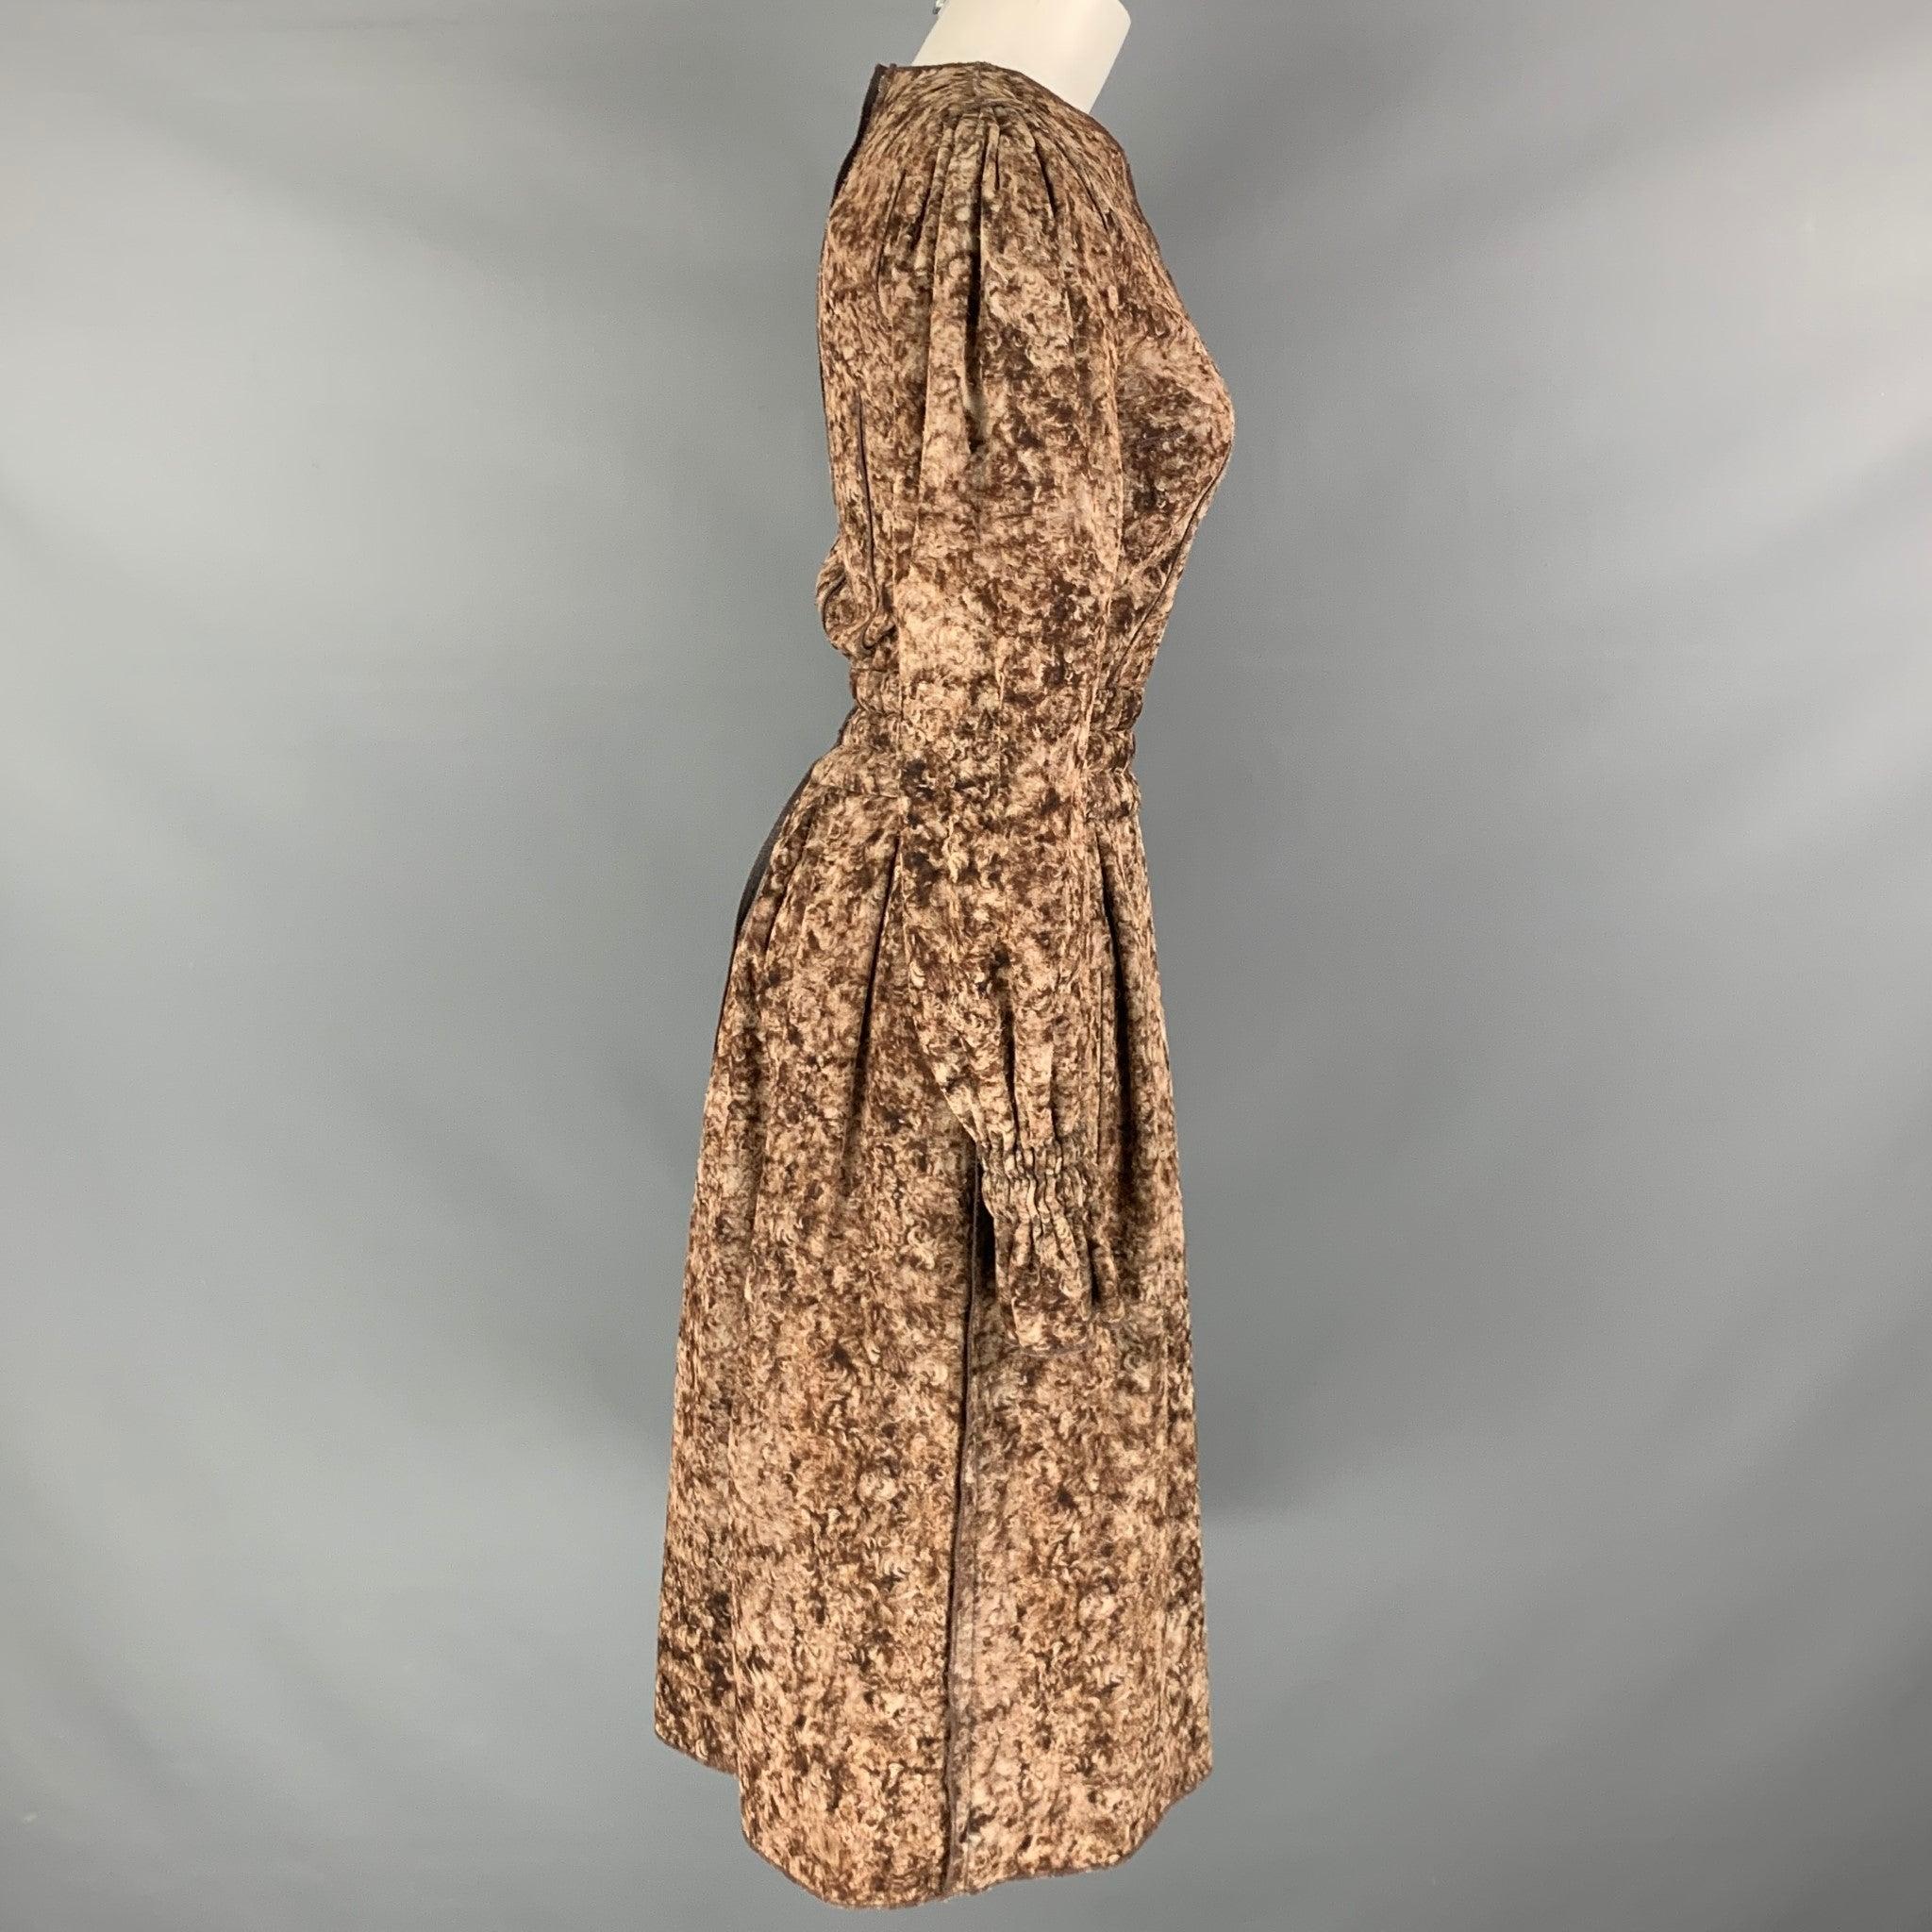 Kleid von DOLCE & GABBANA aus braun-beigem marmoriertem Wollgewebe mit langen Ärmeln, seitlichen Taschen, A-Linien-Stil, elastischer Taille und elastischen Bündchen. Hergestellt in Italien. Sehr guter gebrauchter Zustand. Geringfügig gebrochene